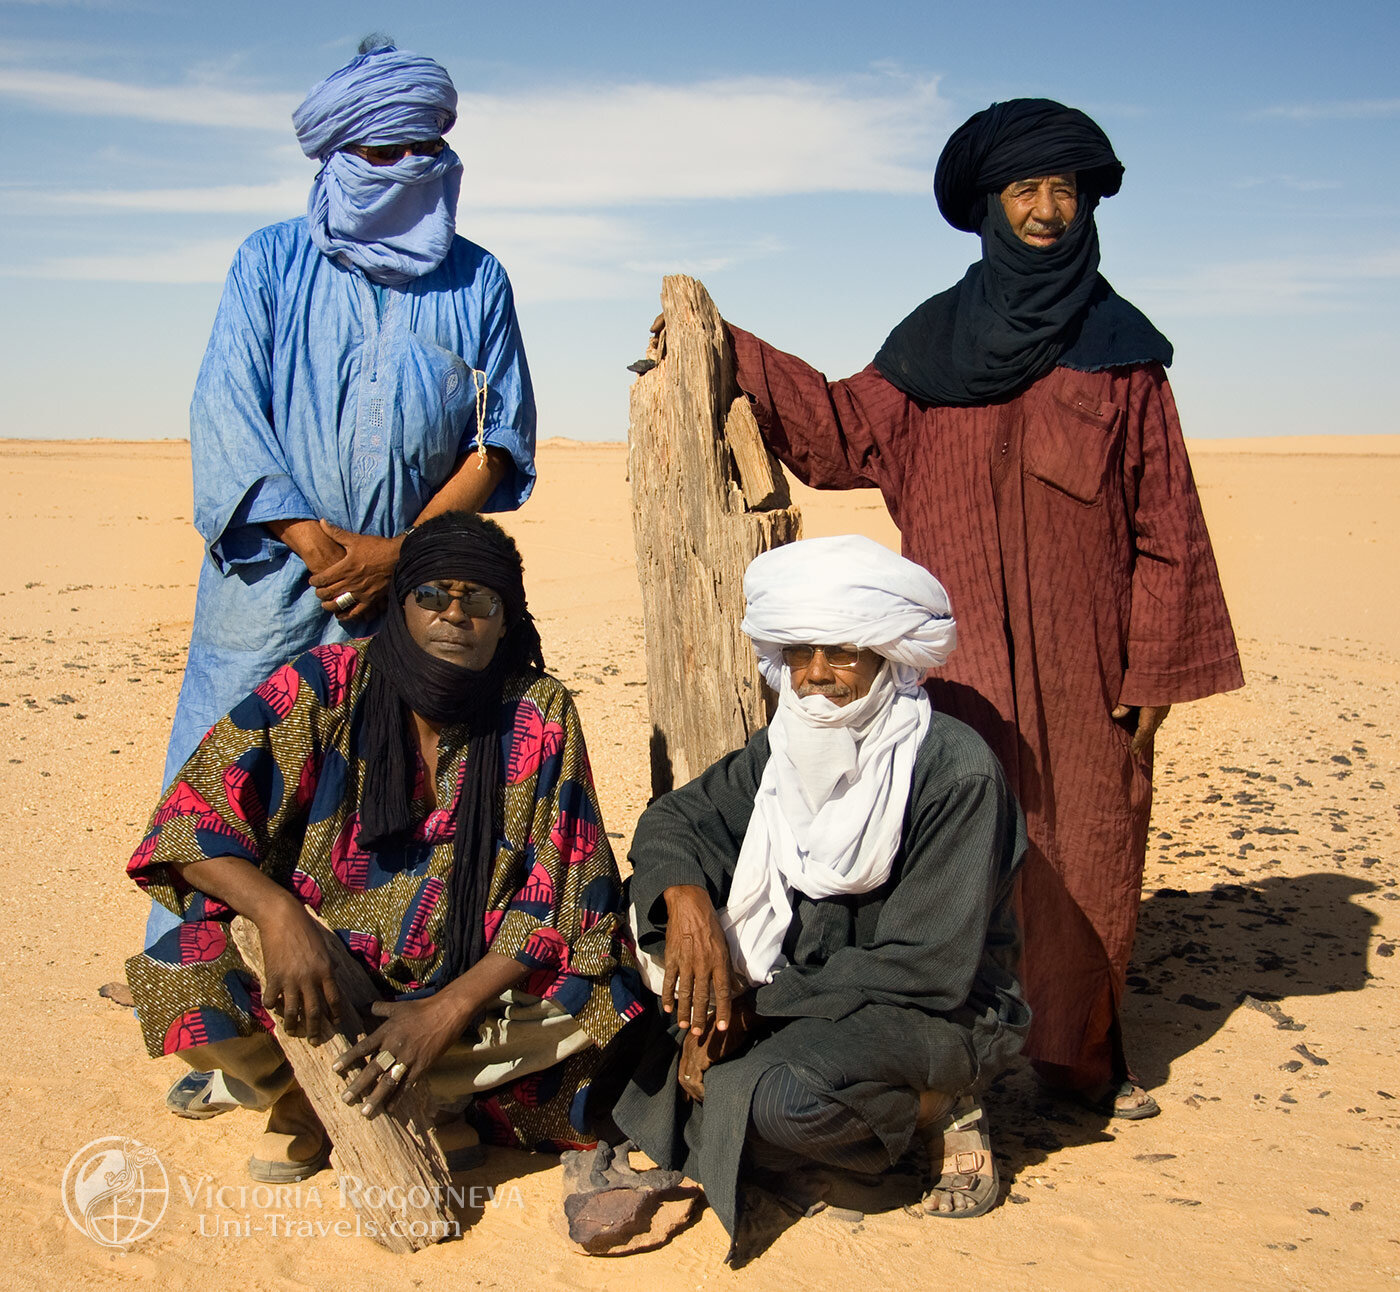 Страна ливия алжир. Берберы туареги бедуины. Арабы берберы туареги. Туареги Марокко бедуины. Алжир туареги.